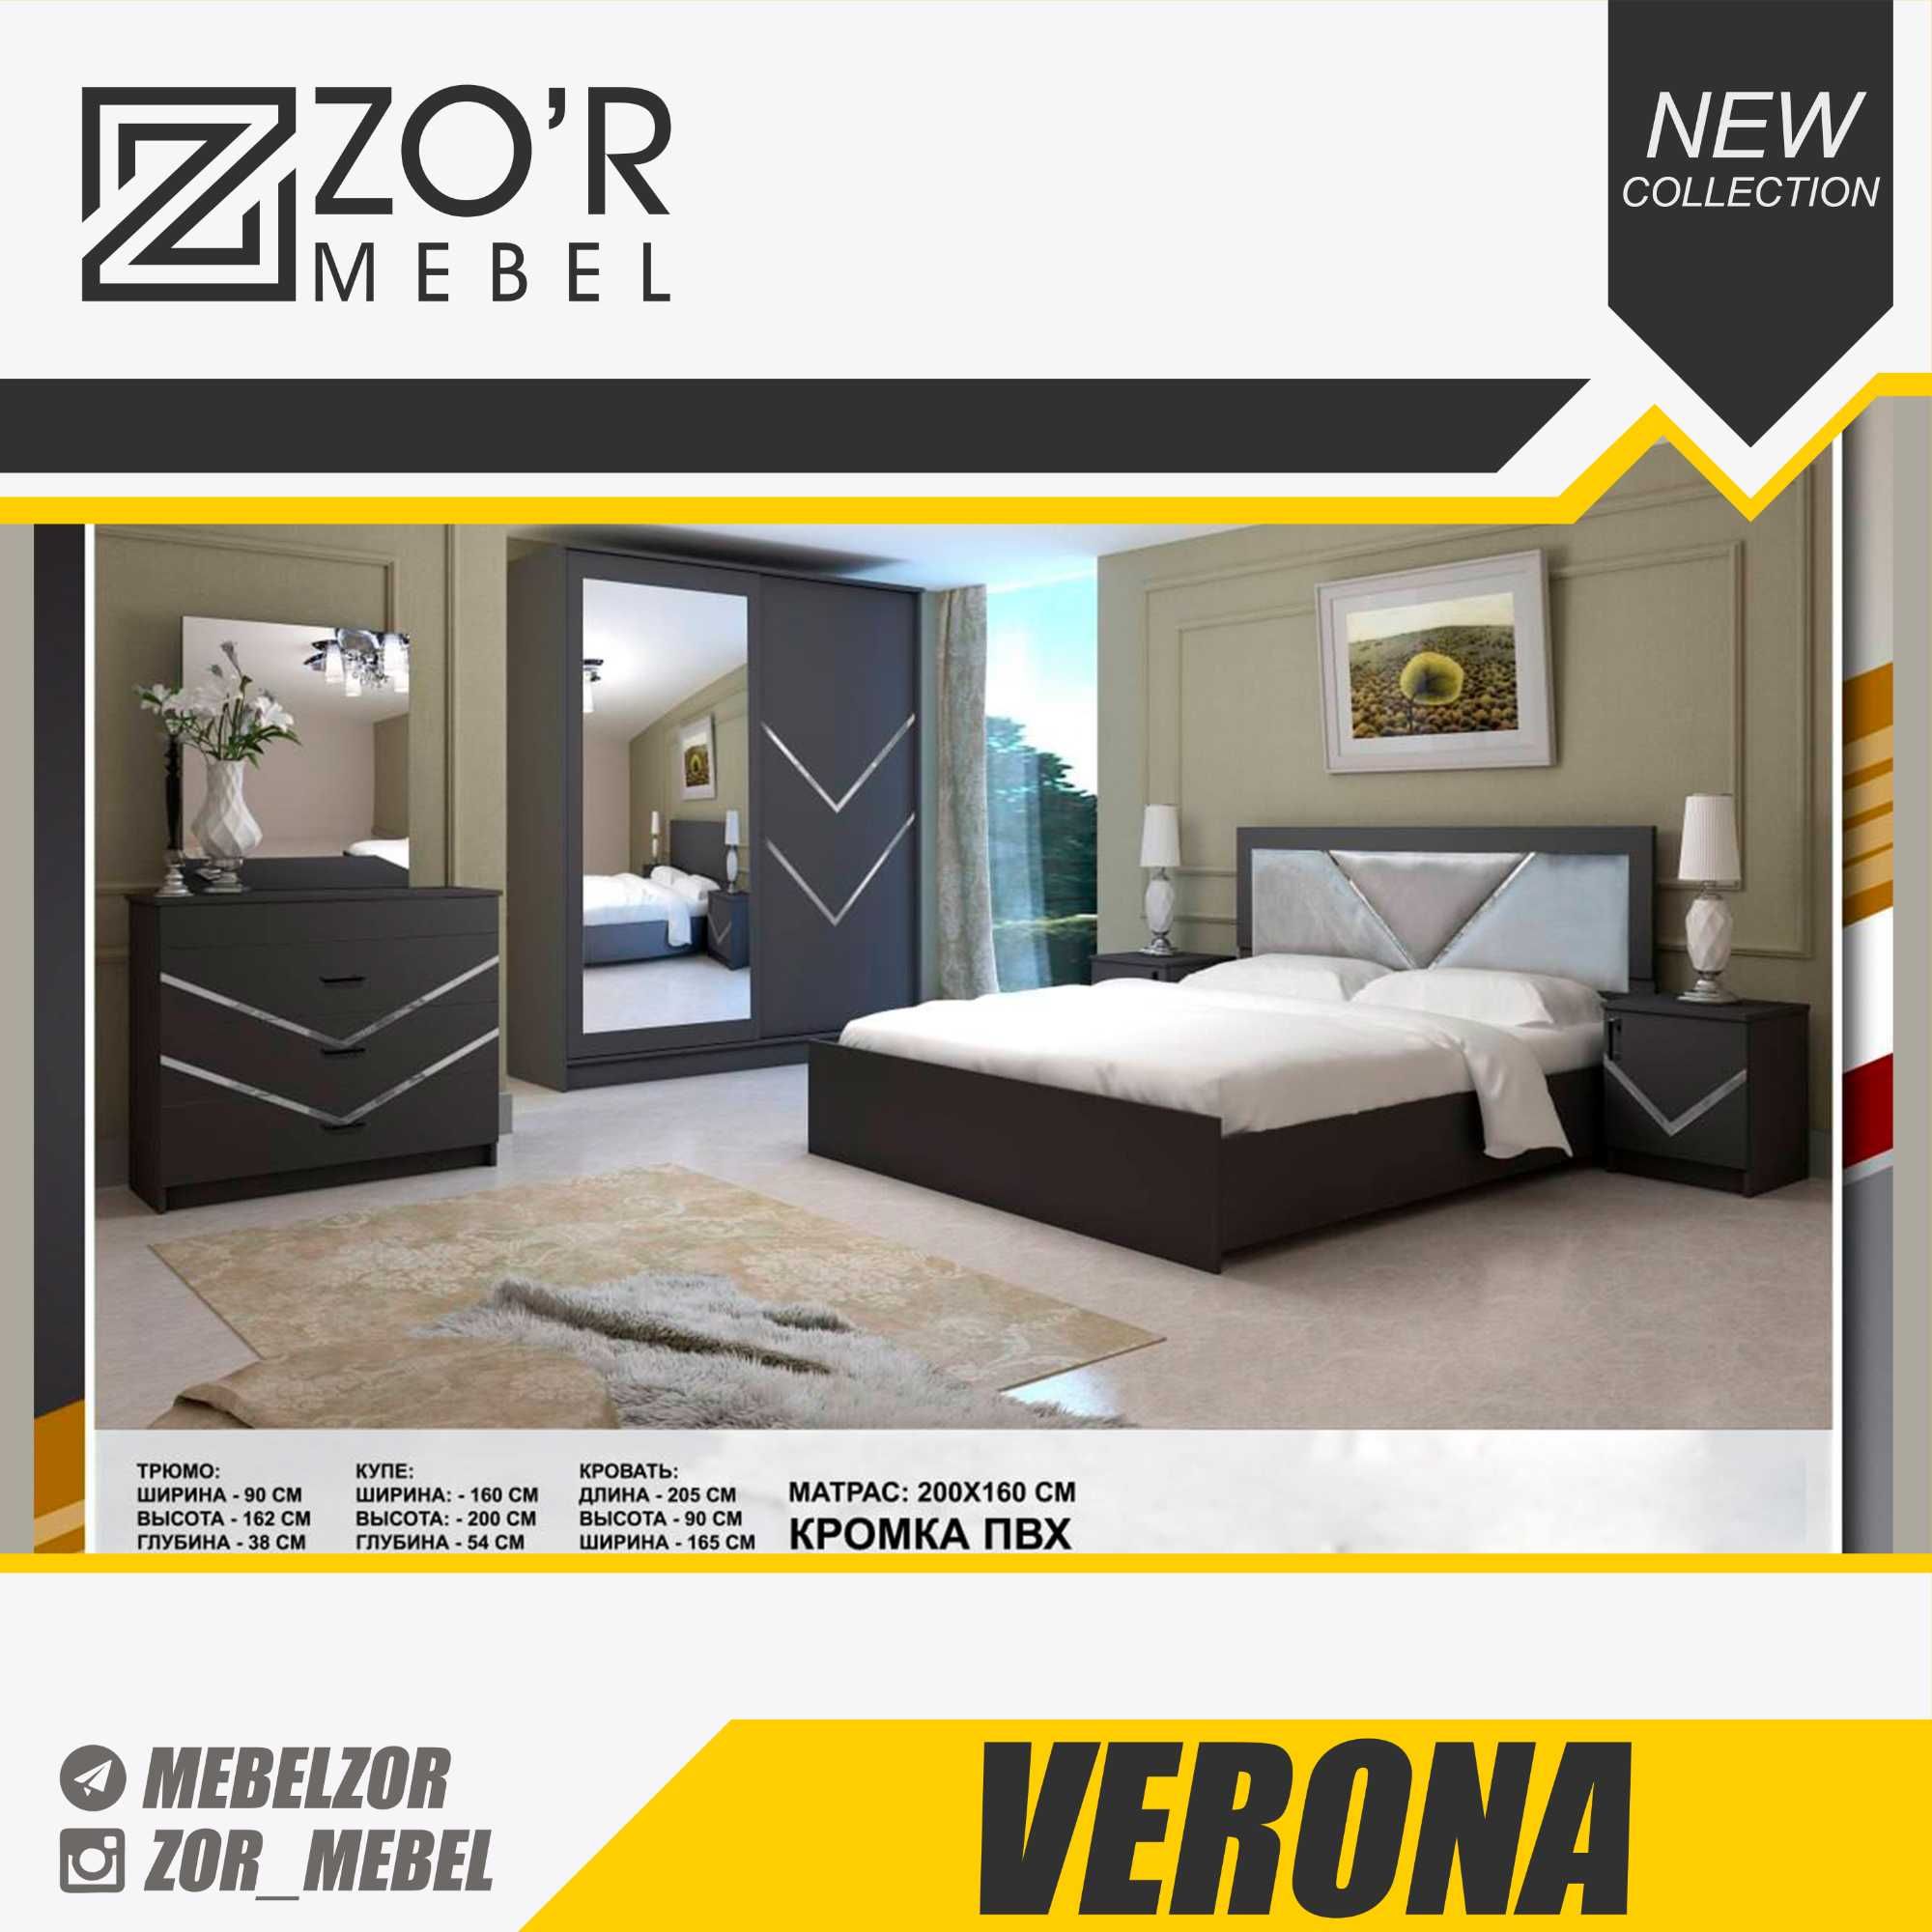 Спальный гарнитур Yotoqxona mebel шкаф кровать Hi tech model Verona